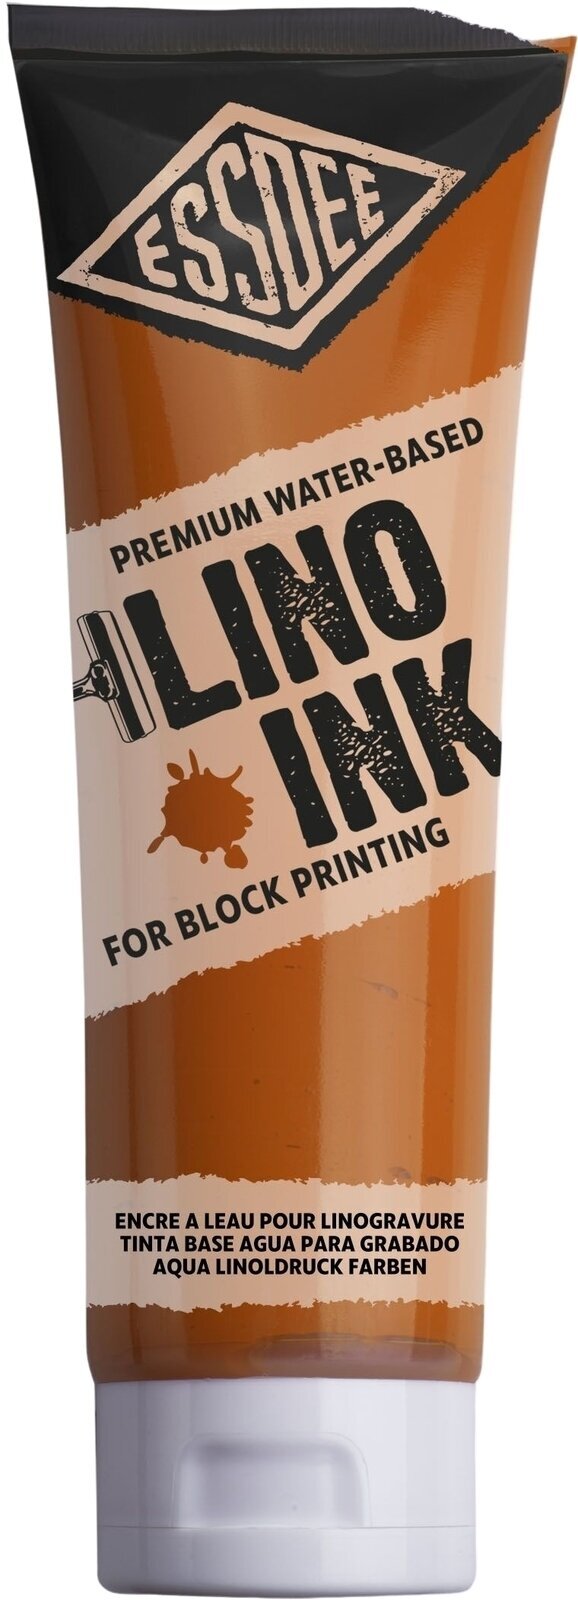 Verf voor linosnede Essdee Block Printing Ink Verf voor linosnede Orange 300 ml